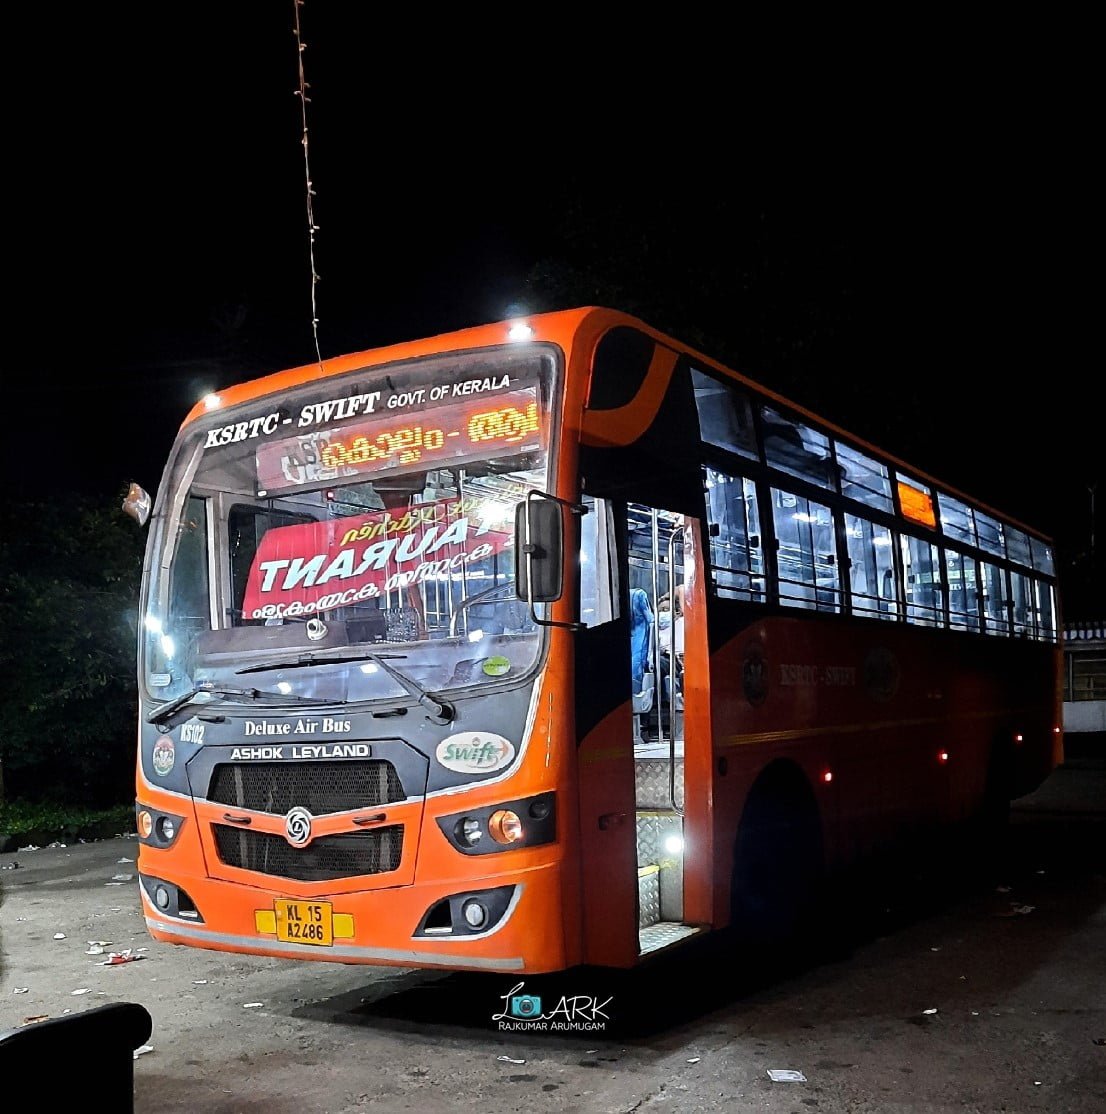 KSRTC KS102 Thiruvananthapuram - Kozhikode SWIFT Deluxe Air Bus Timings